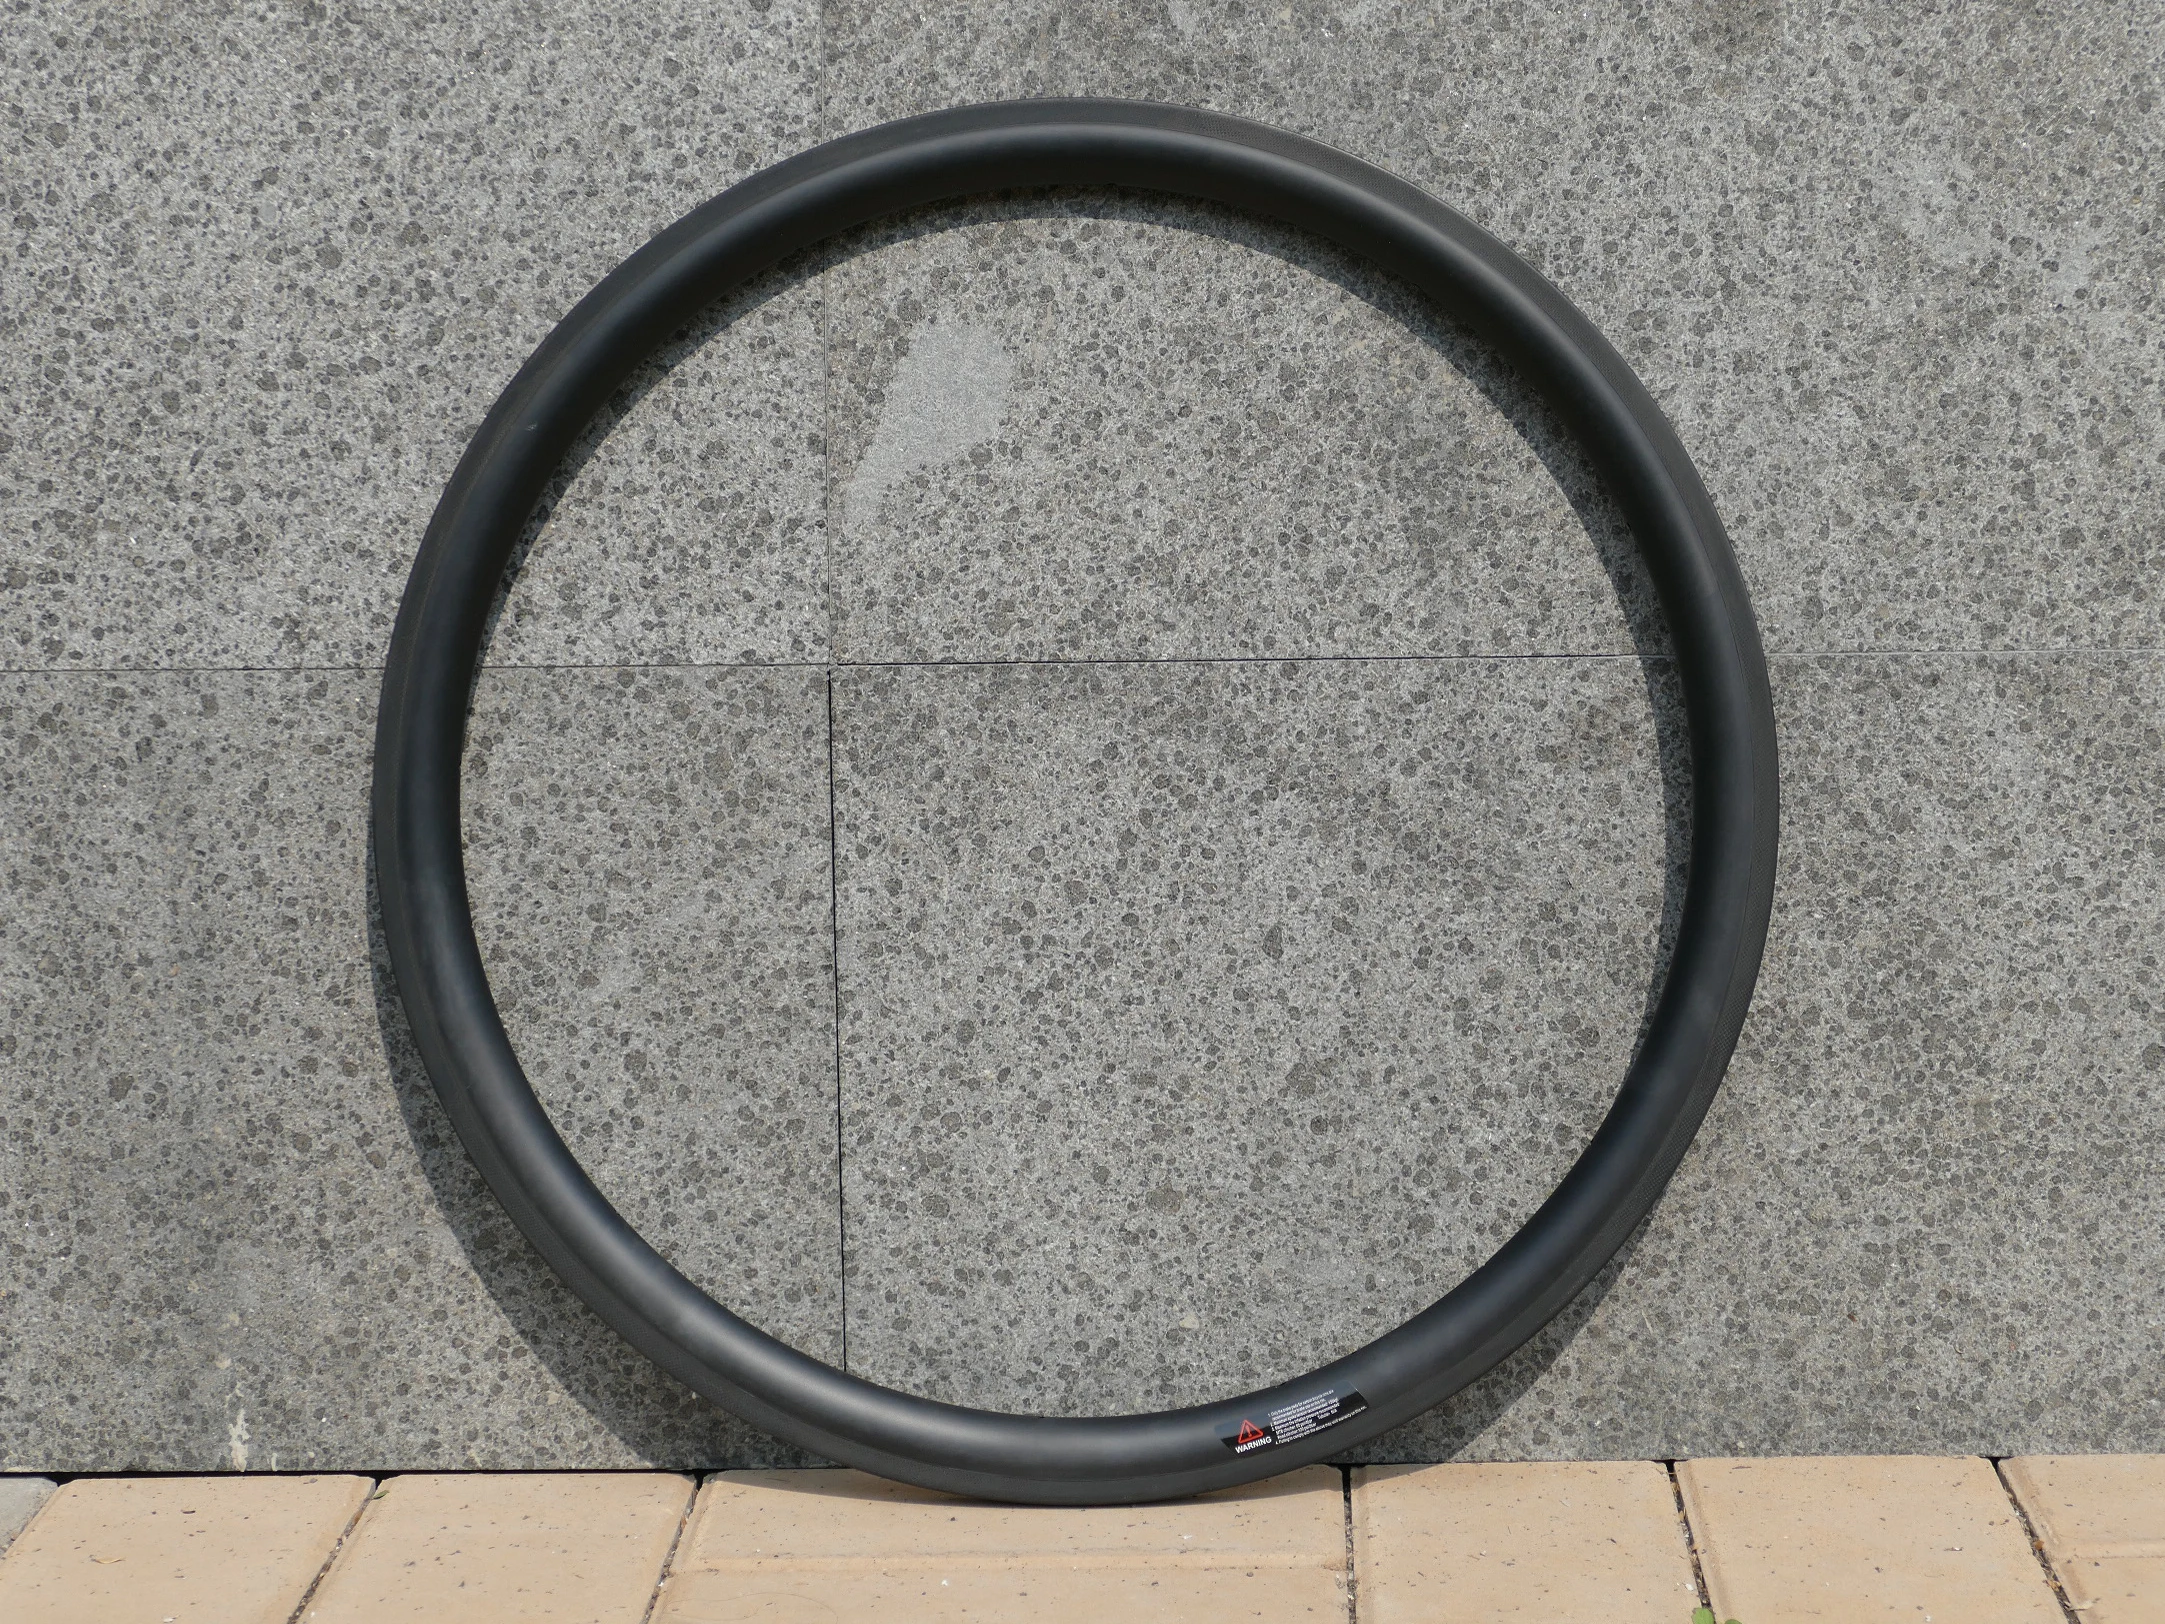 

Including 1 Pair Rims Full Carbon Road Bike Bicycle Tubeless Wheel Rims Depth 38mm Width 23mm Wheel Rim Basalt Brake Surface